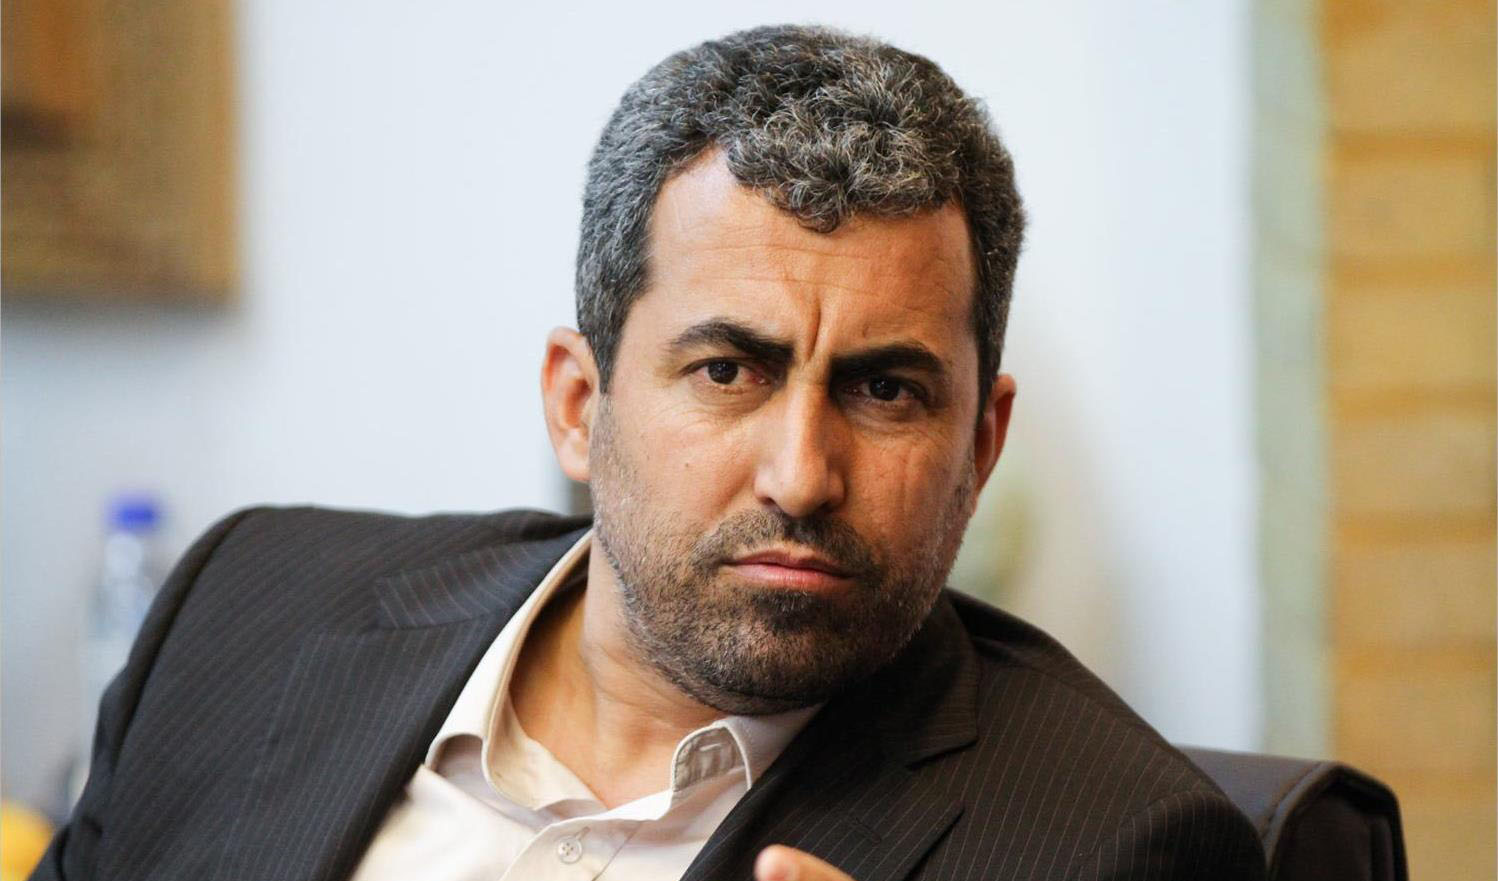 پورابراهیمی: عرضه خودرو در بورس کالا جایگزین قرعه کشی شود